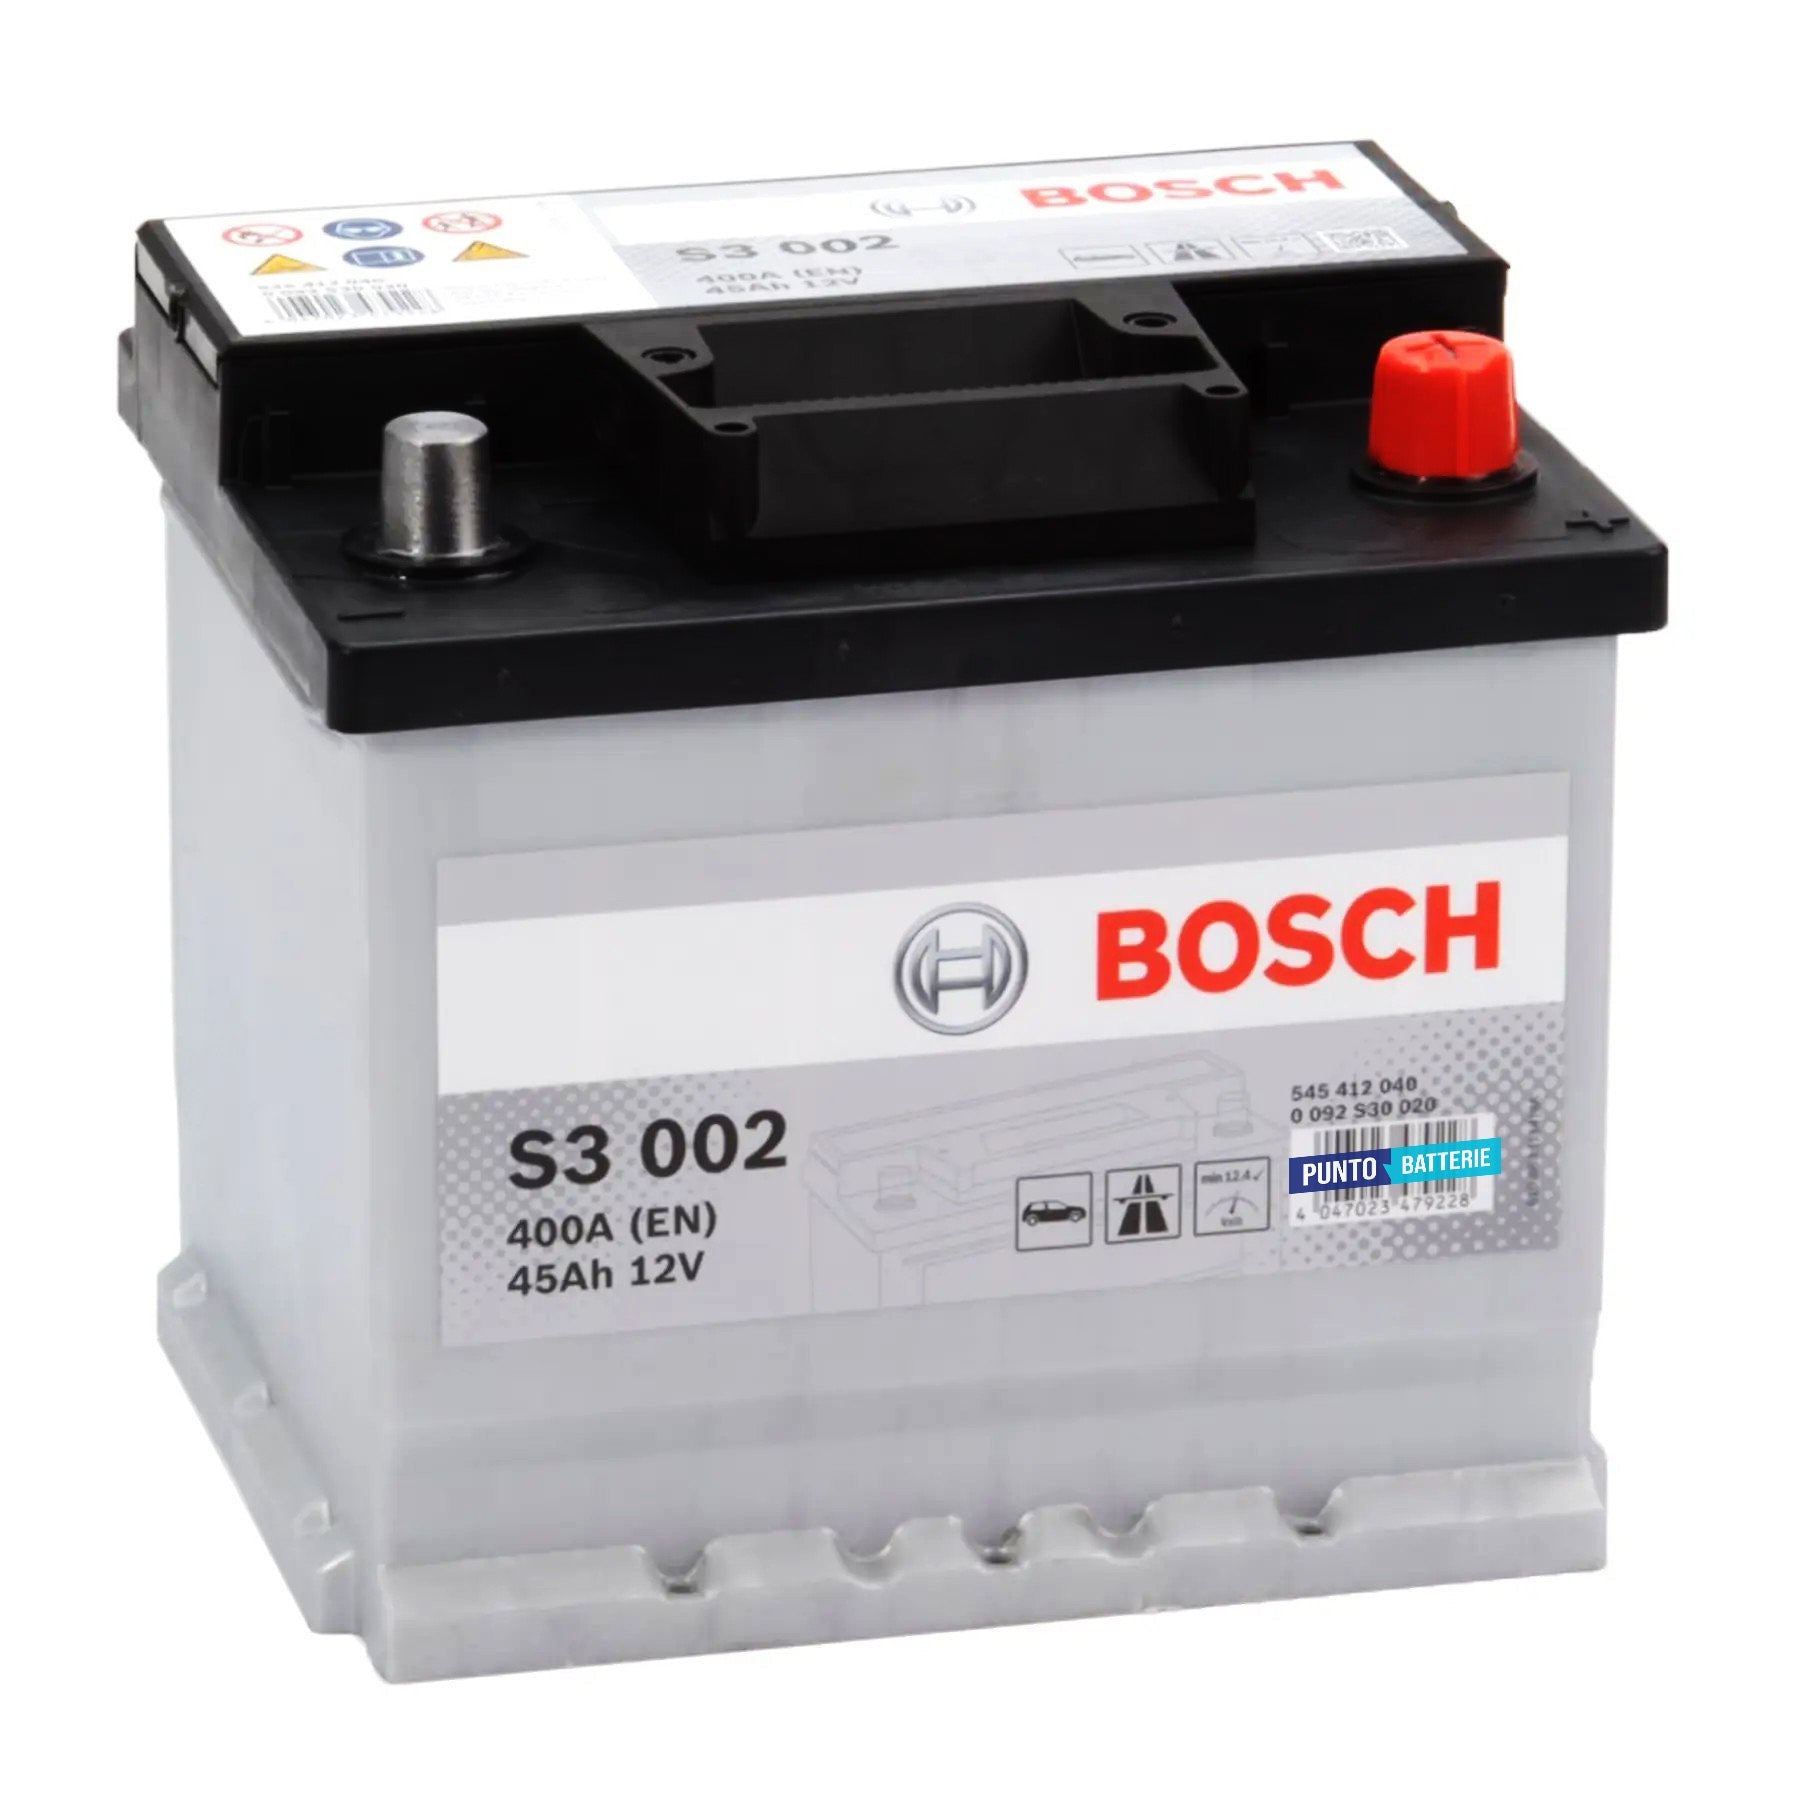 Batteria originale Bosch S3 S3 002, dimensioni 207 x 175 x 190, polo positivo a destra, 12 volt, 45 amperora, 400 ampere. Batteria per auto e veicoli leggeri.